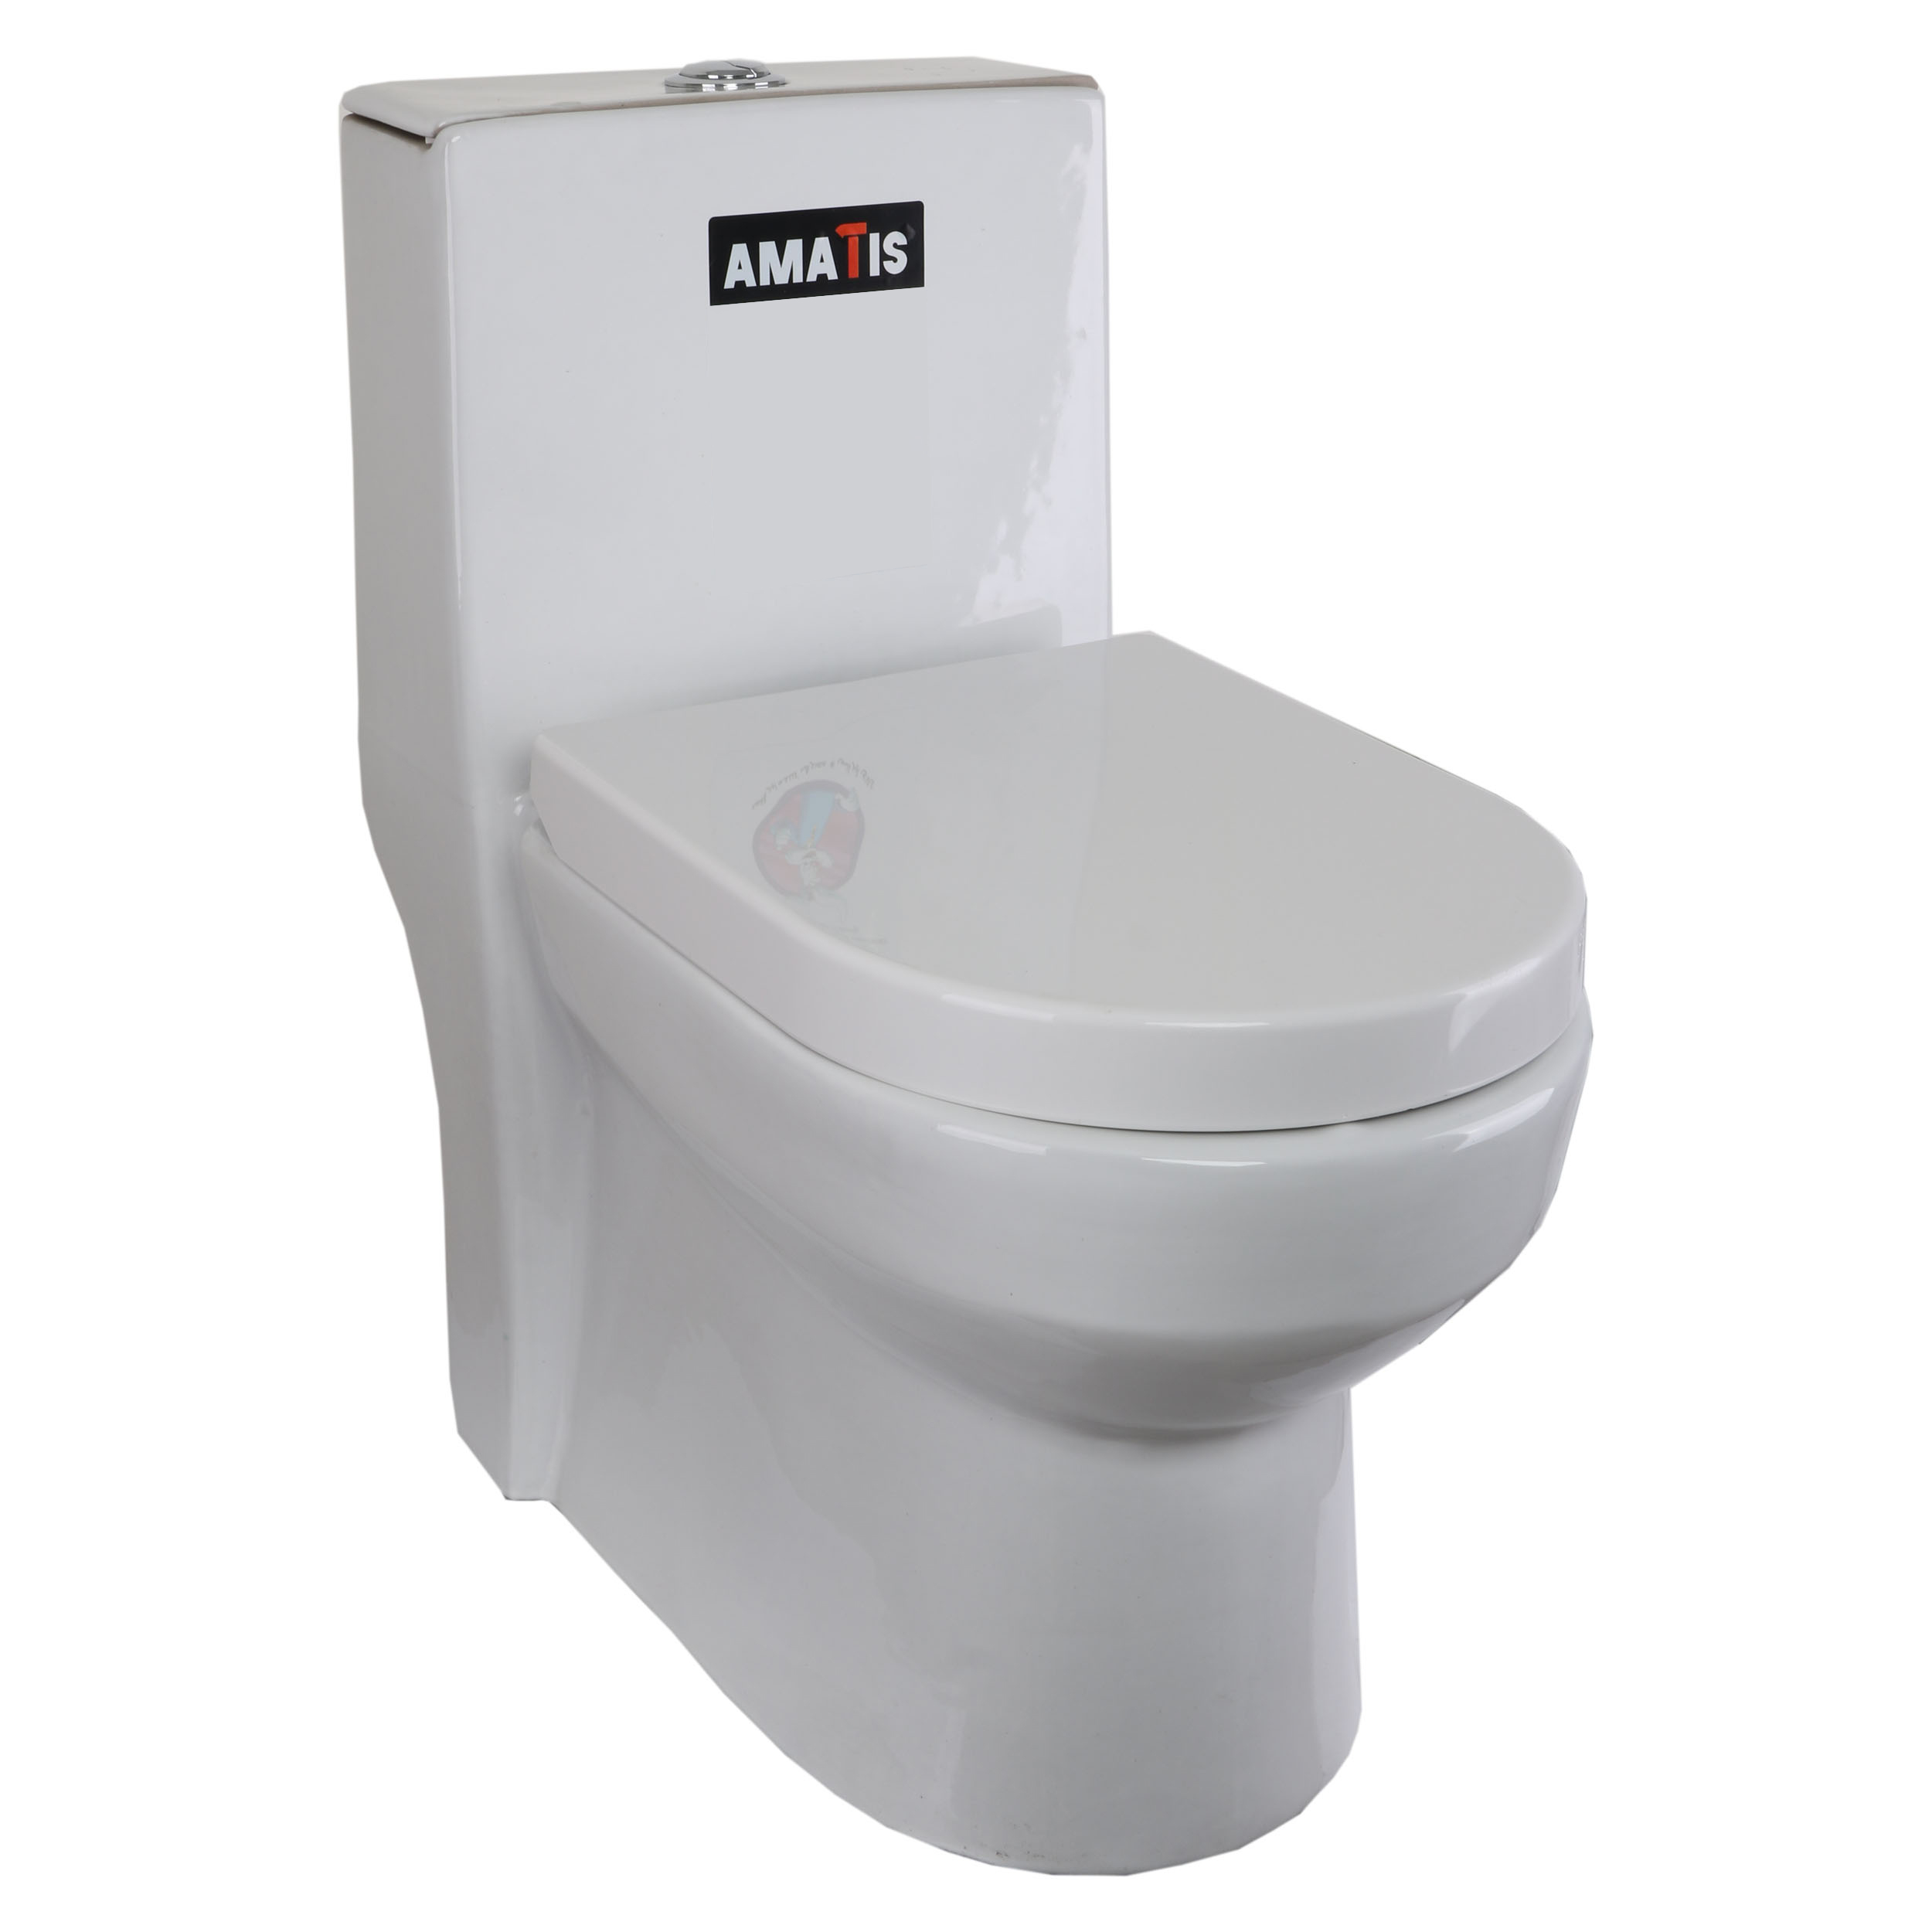 قیمت توالت فرنگی آماتیس مدل T01